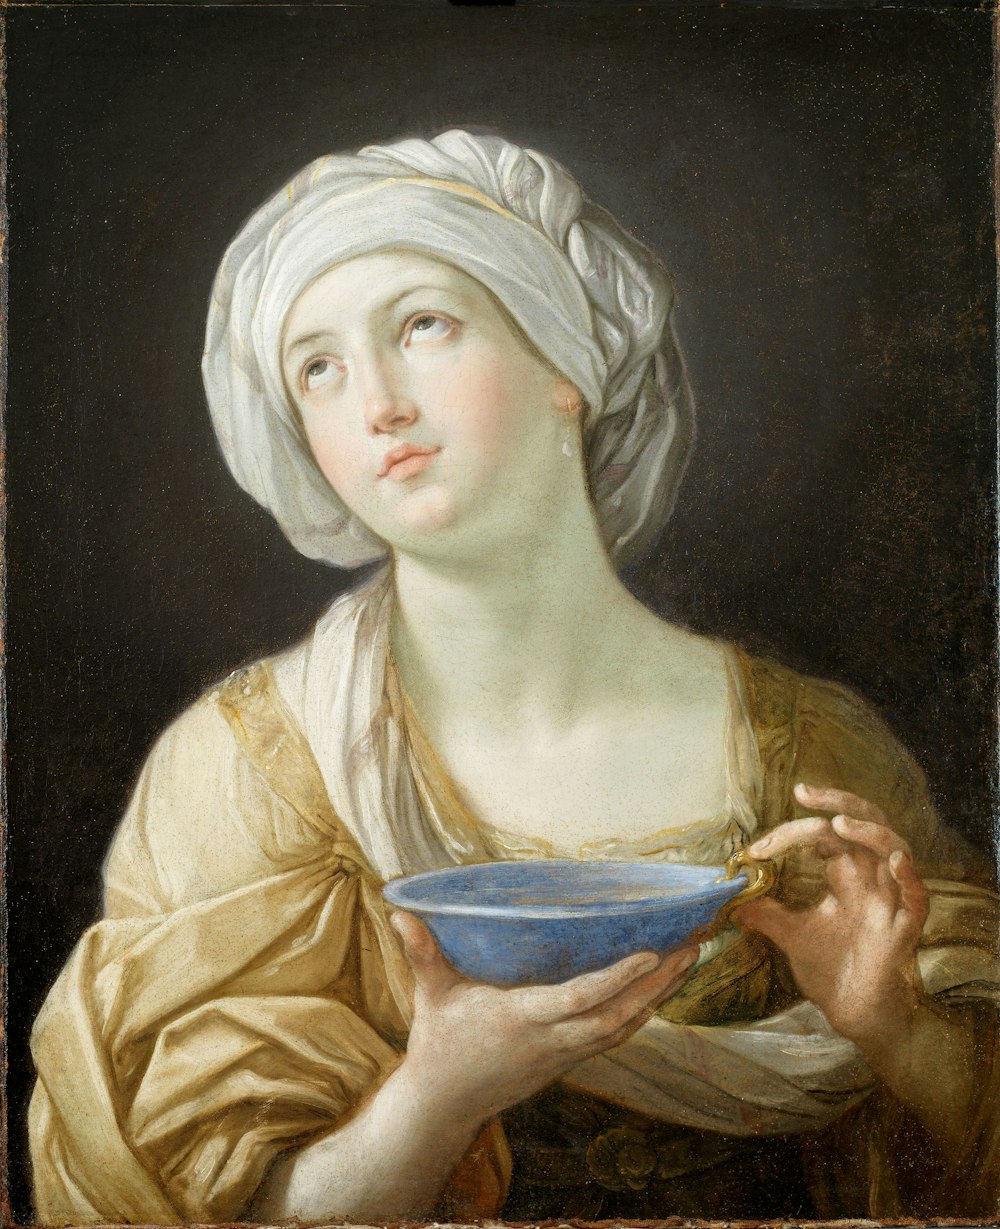 Donna che indossa un copricapo bianco mentre tiene la pittura blu della ciotola